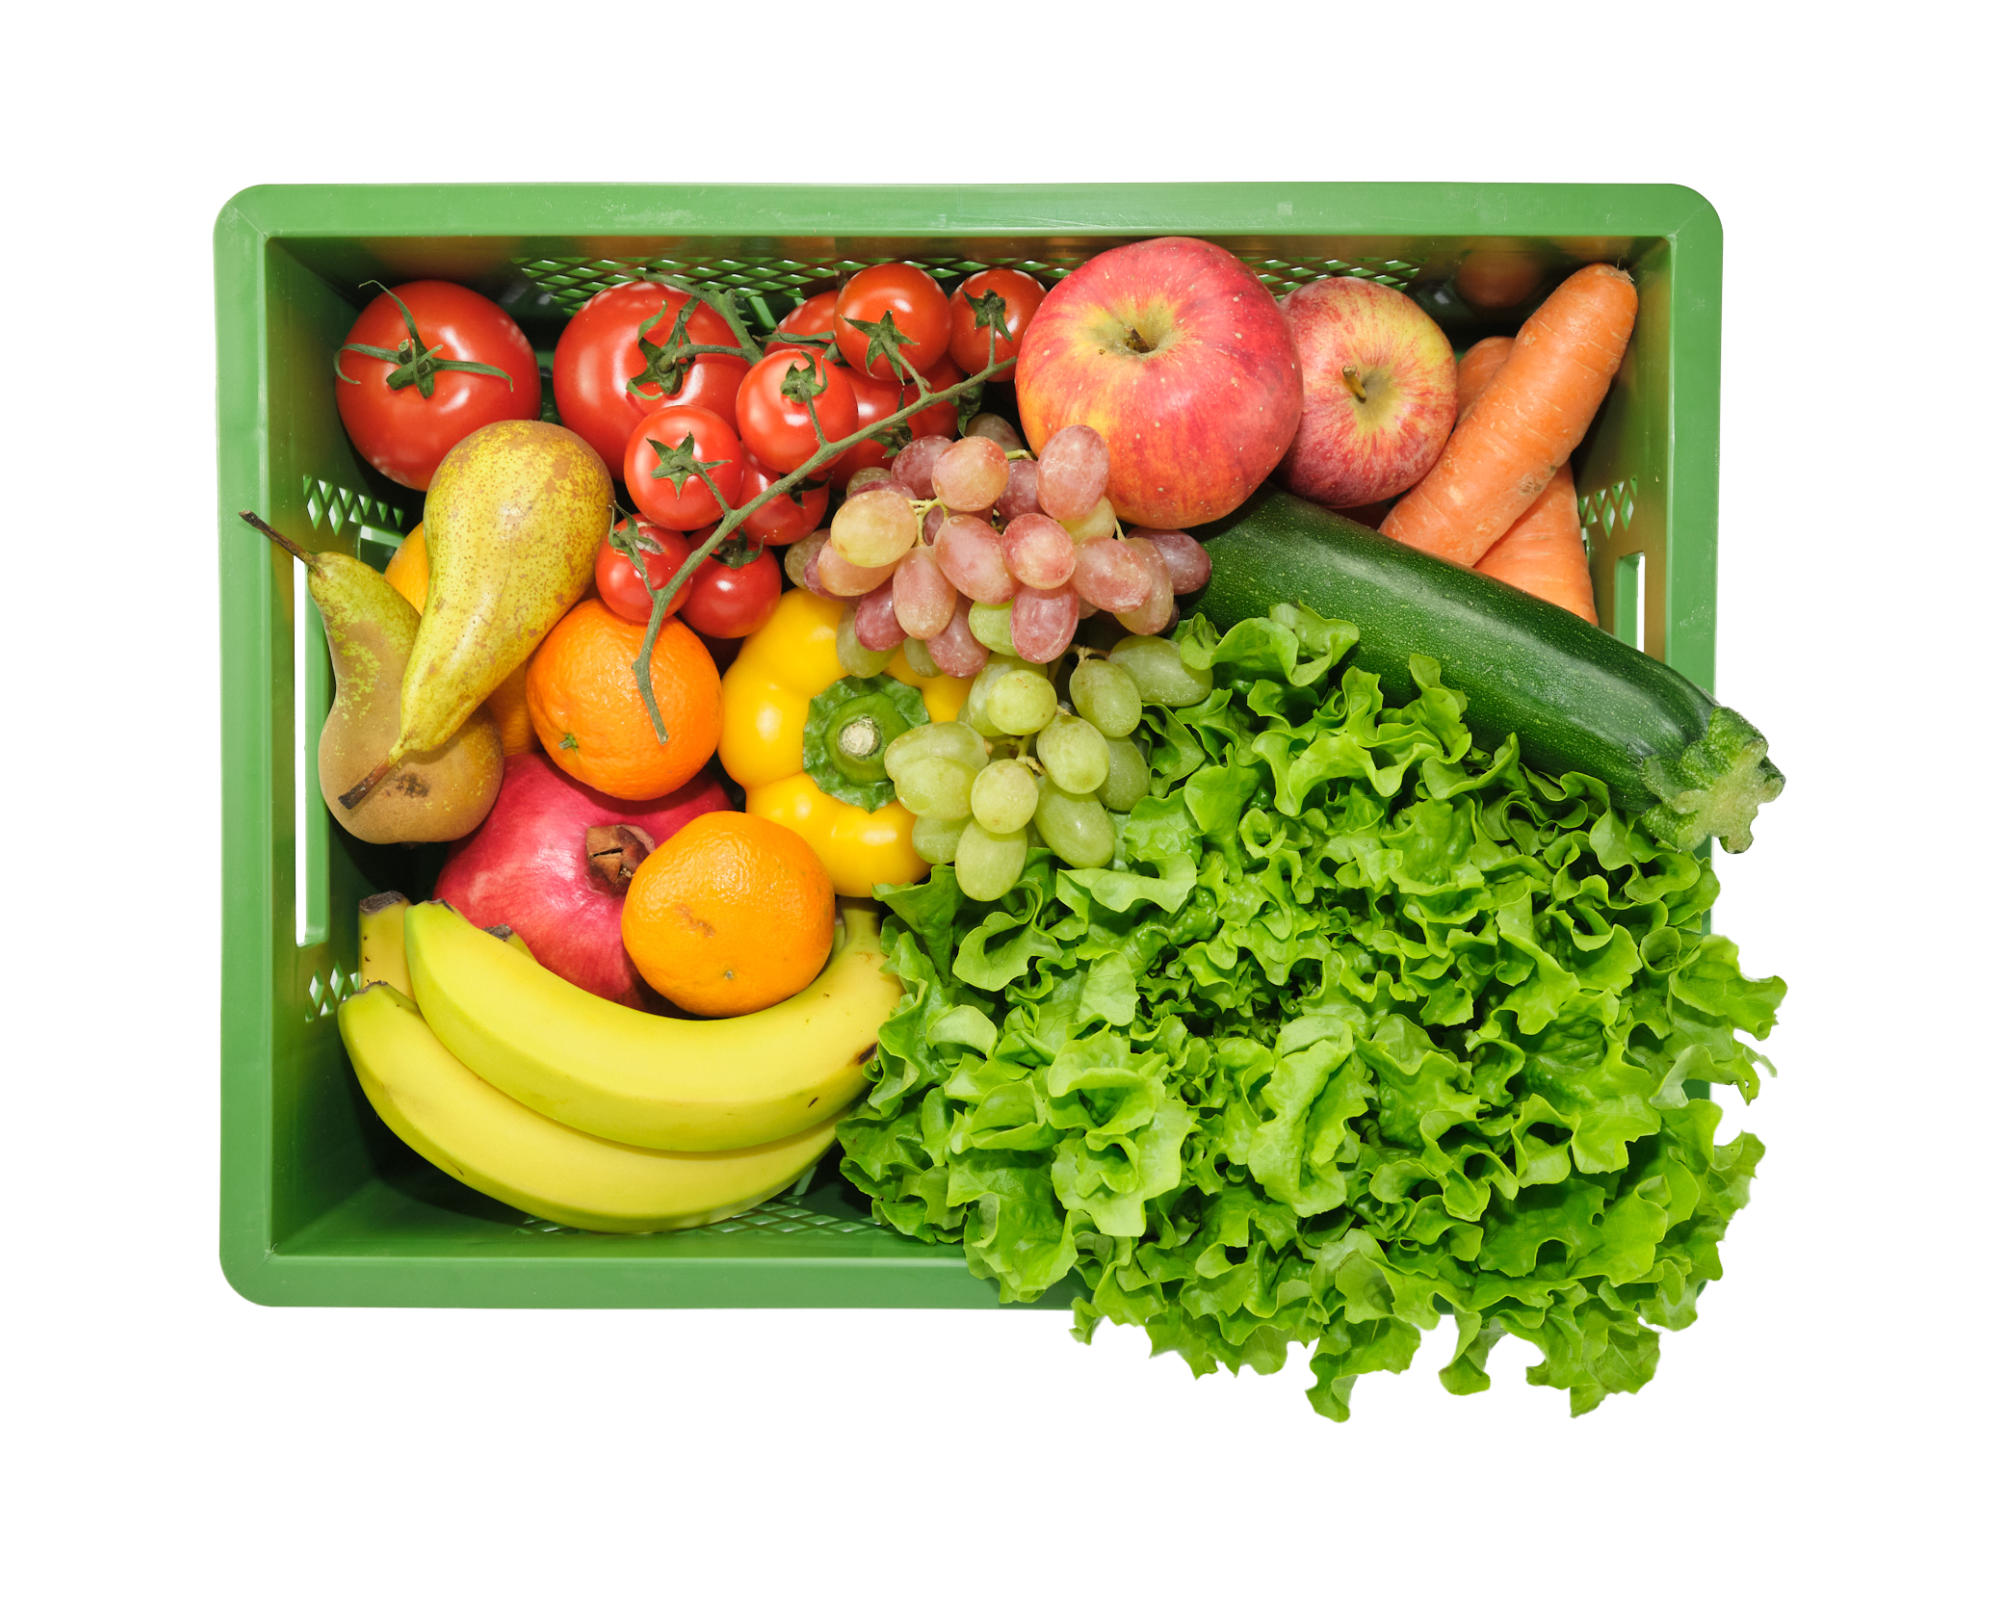 Ökokiste mit Obst und Gemüse